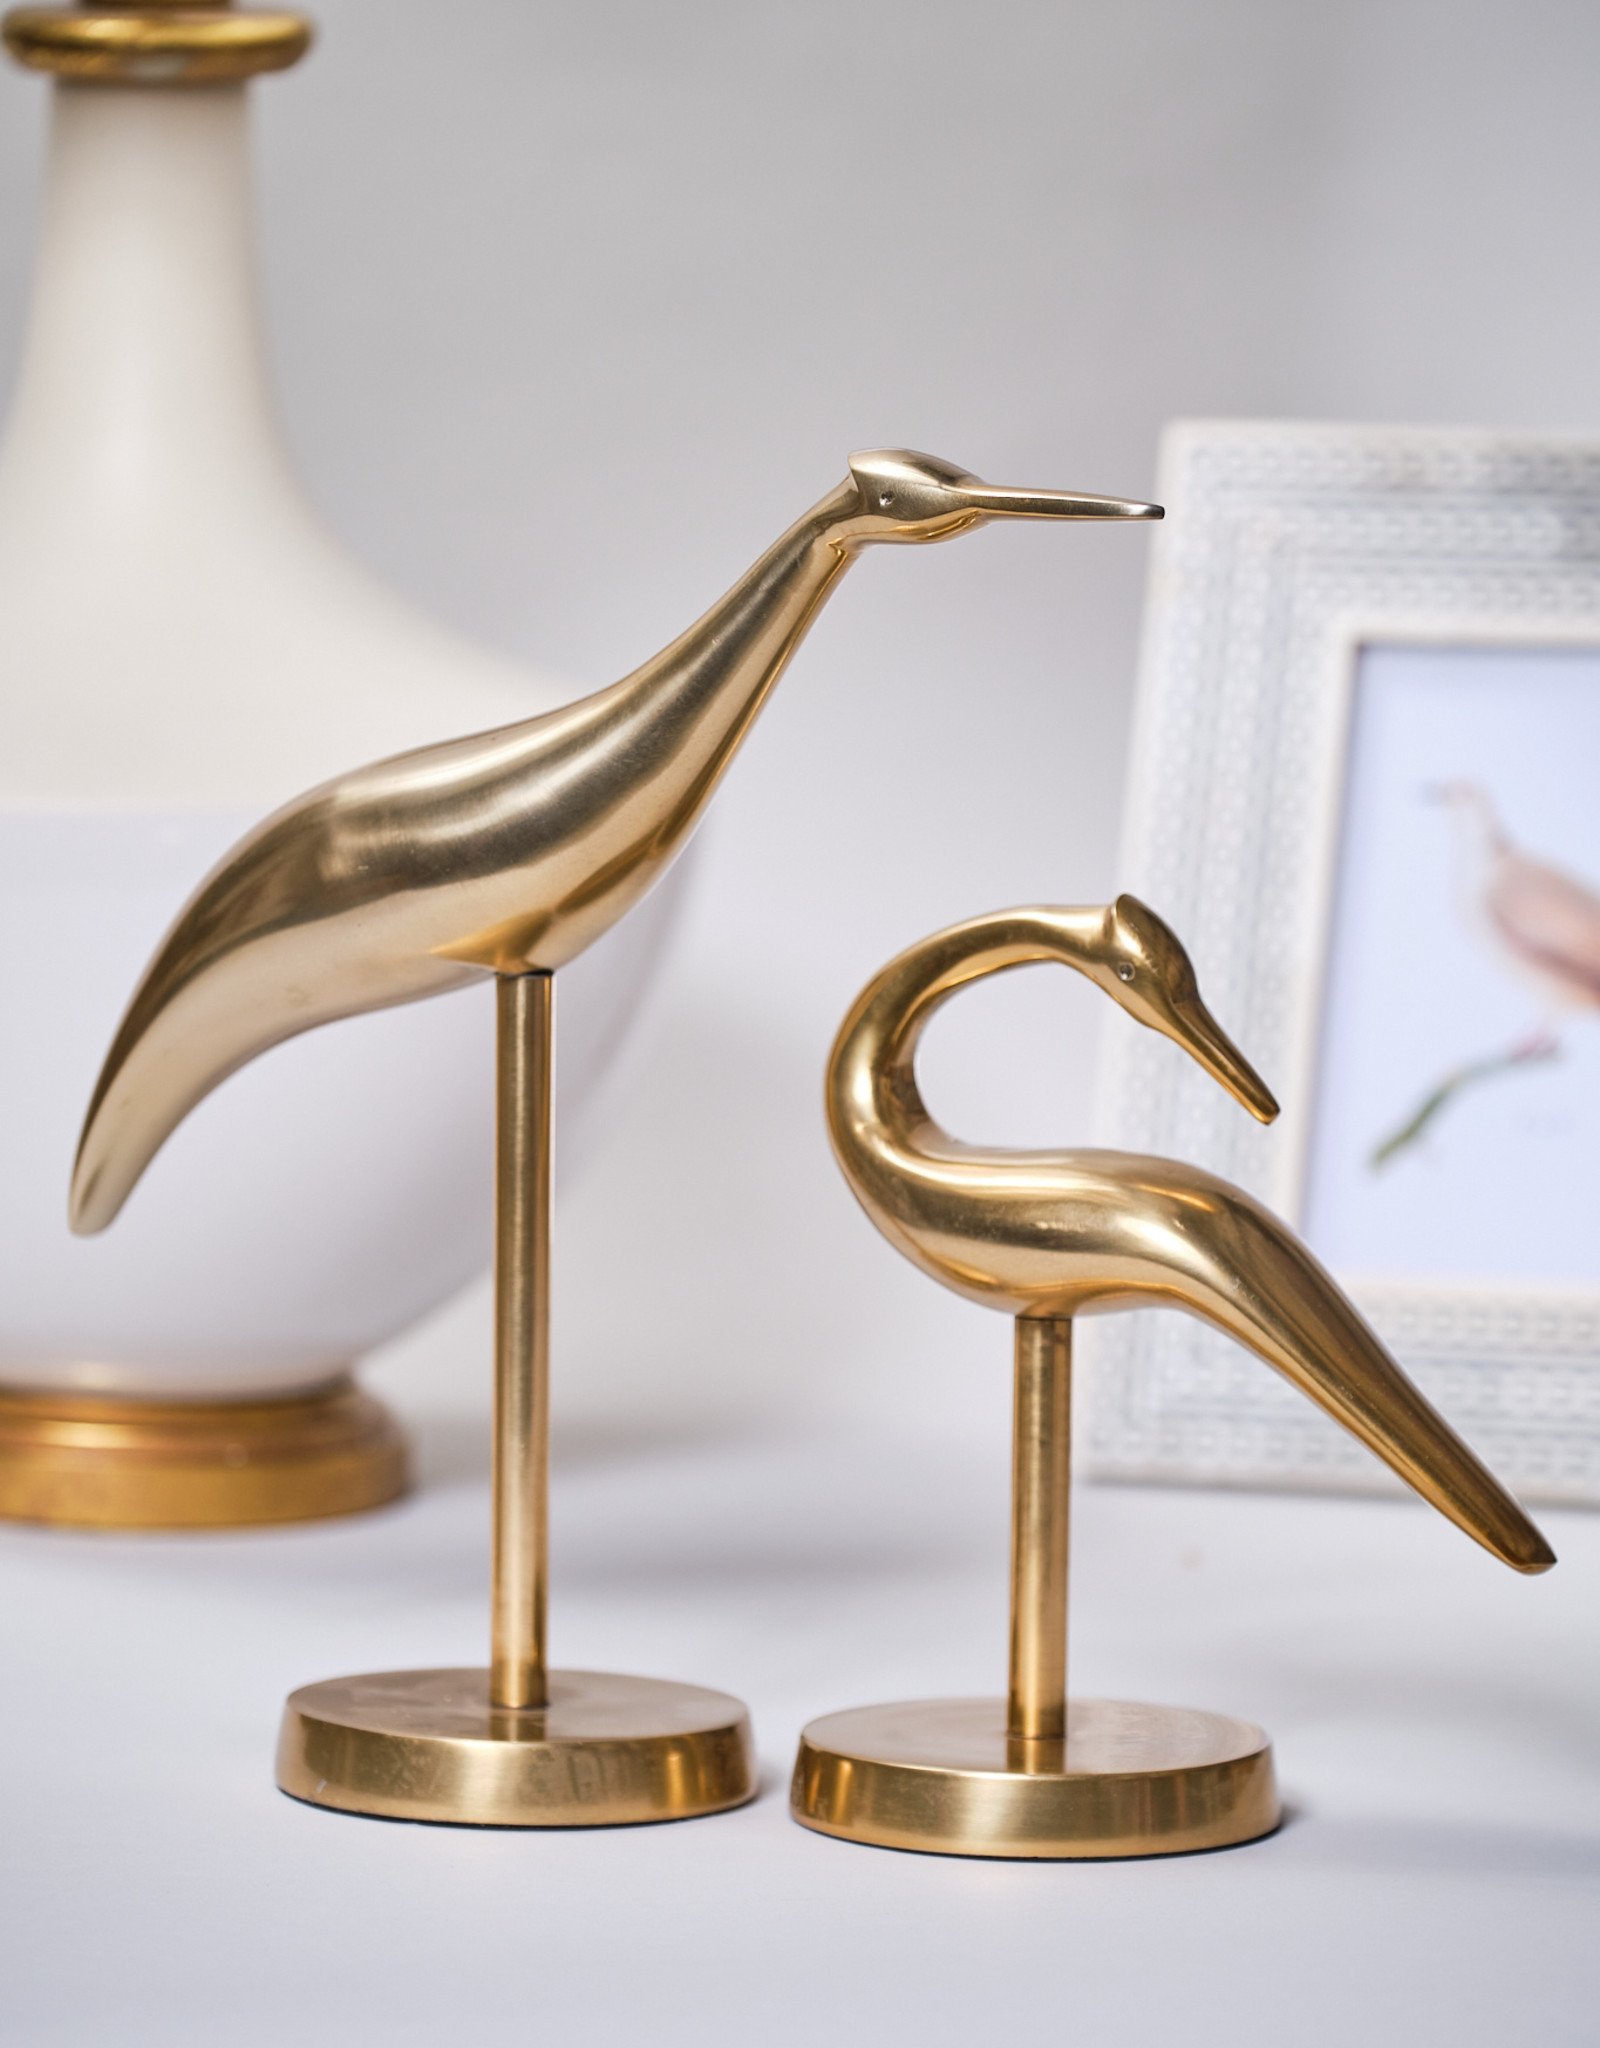 Gold Heron - Large